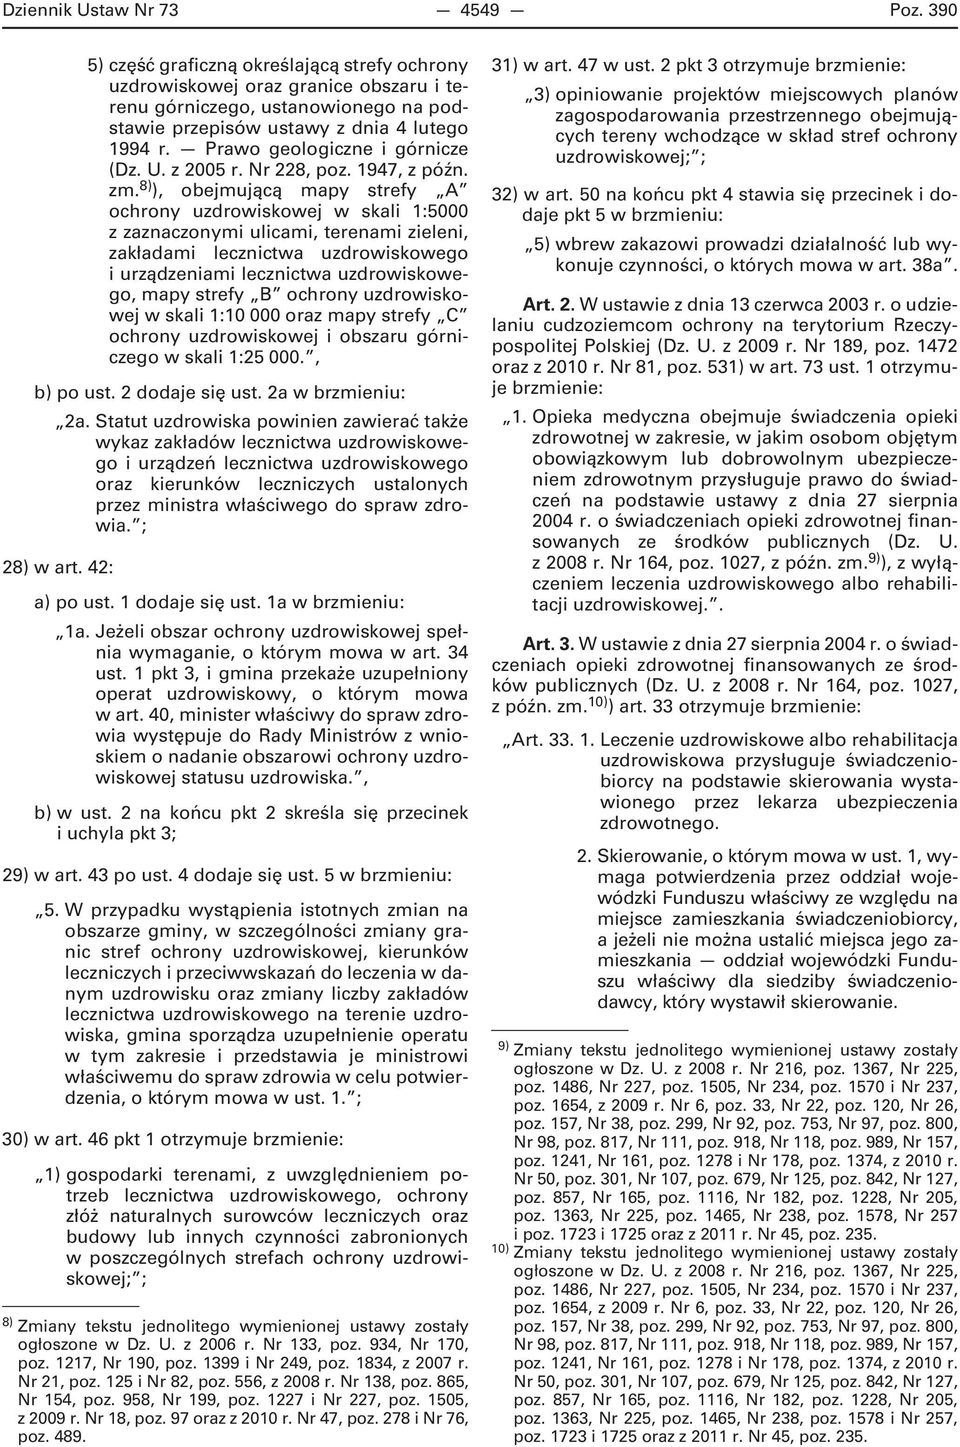 Prawo geologiczne i górnicze (Dz. U. z 2005 r. Nr 228, poz. 1947, z późn. zm.